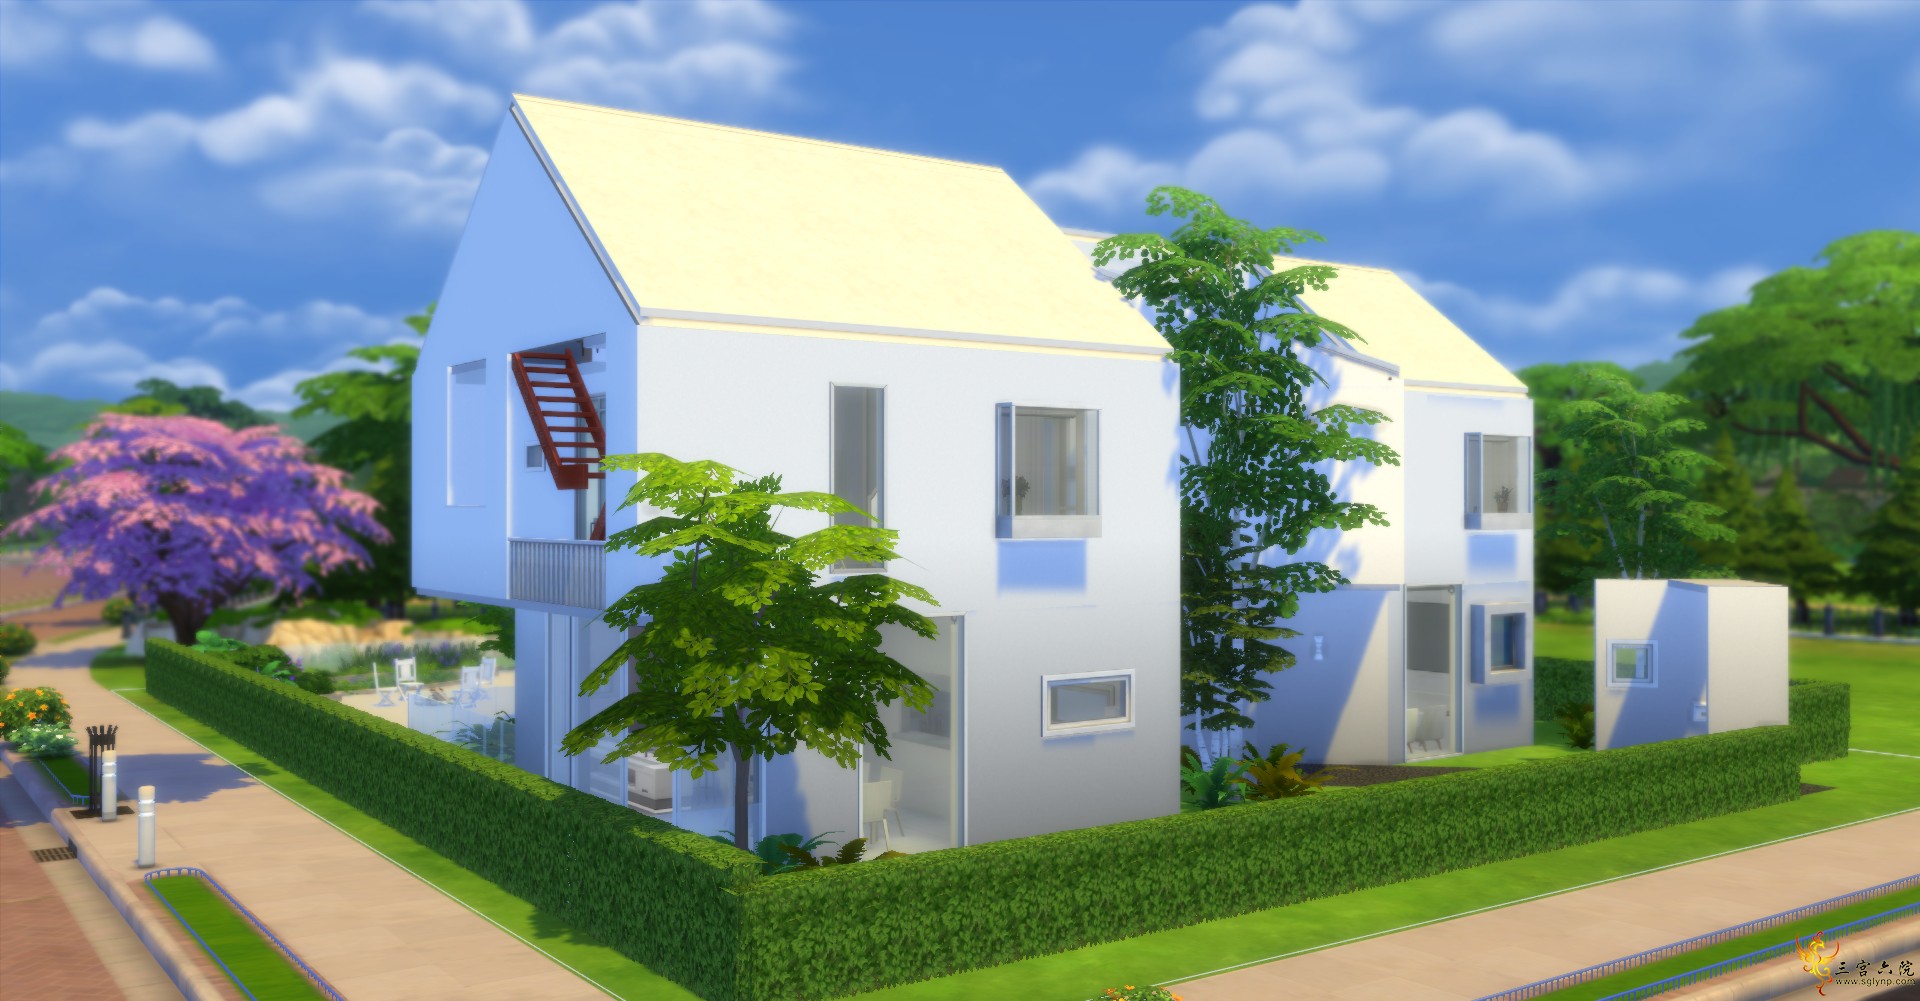 Sims 4 Screenshot 2021.07.01 - 11.22.19.21.png